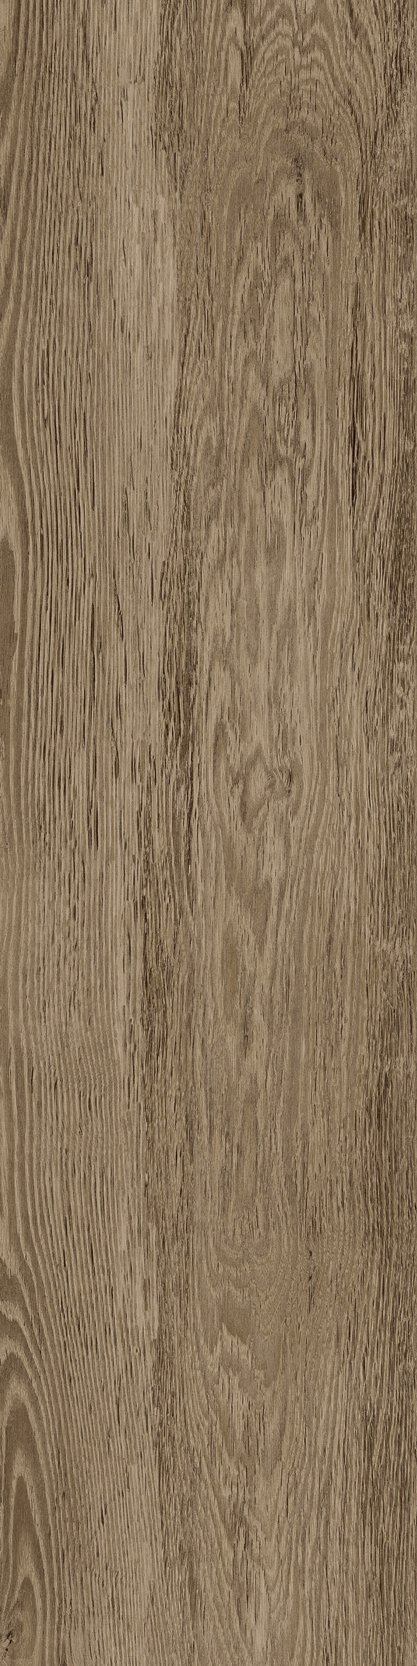 Fliese Eiche-Holzoptik braun 30x120 cm "Sunwood Walnut" rektifiziert